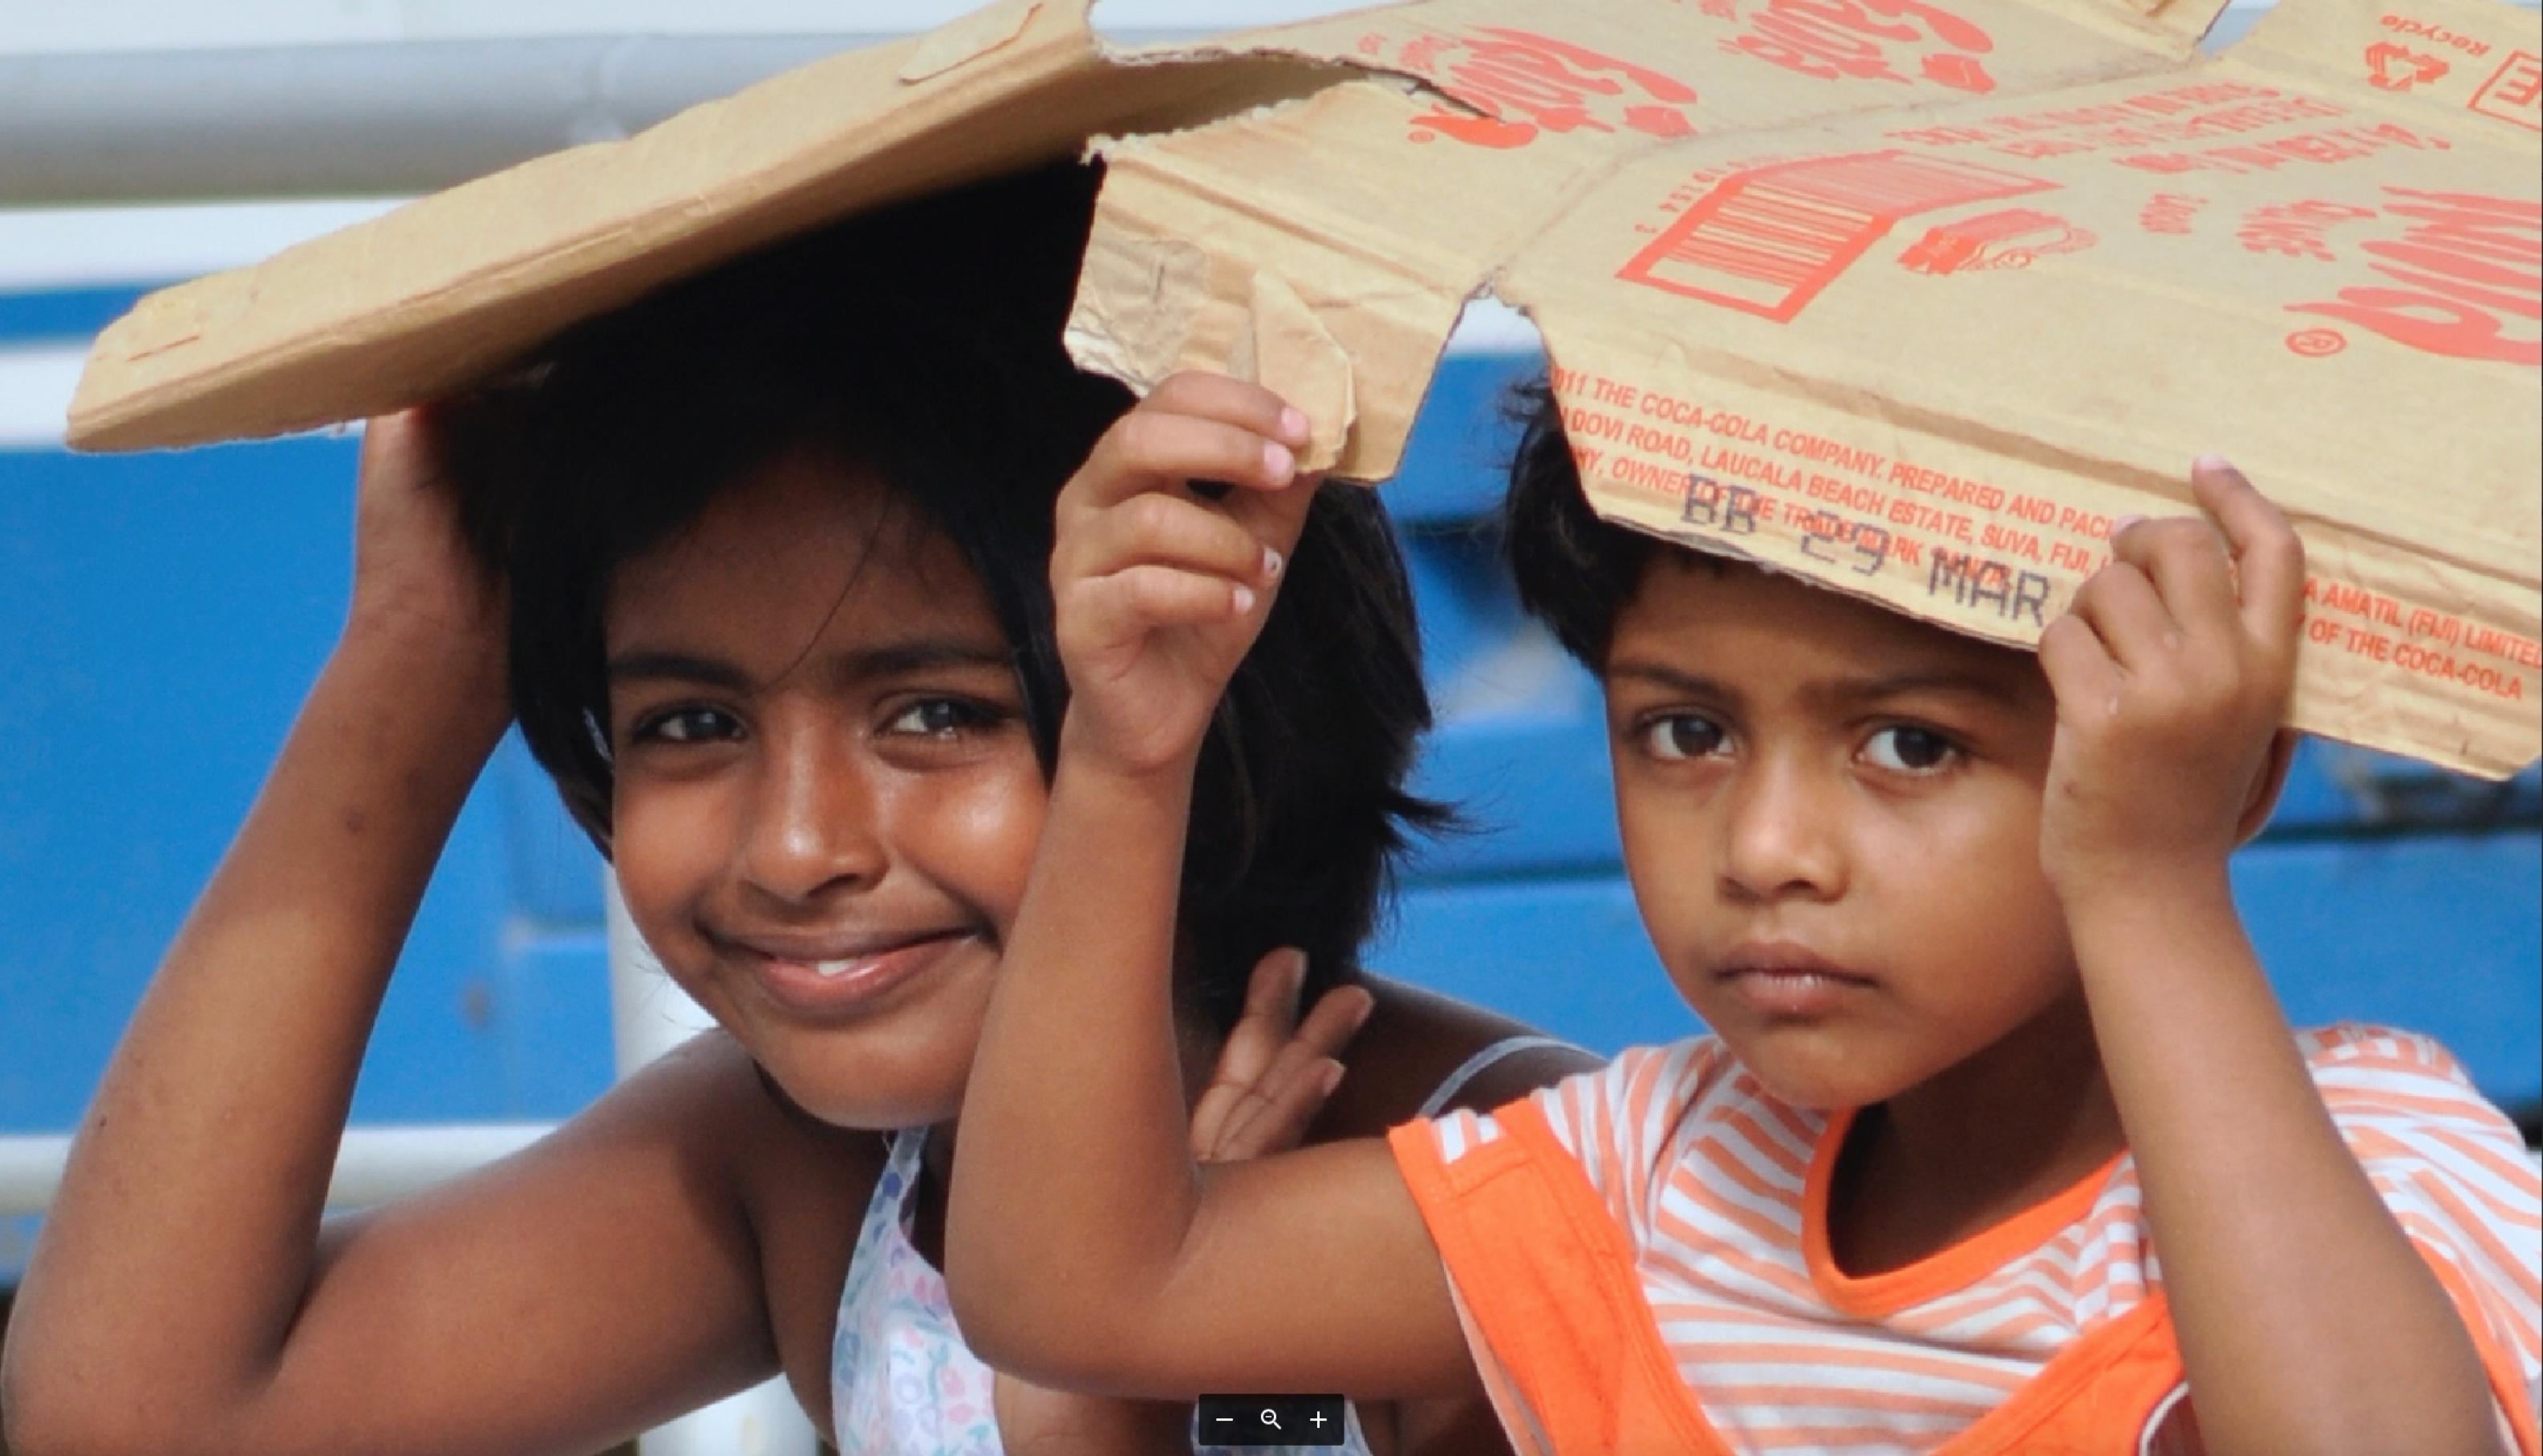 Bei Sonnenschein und wenn der Fotograf kommt, genügt eine Pappe als Schutz. Doch die Mädchen auf Fidschi werden in ihrem Leben vermutlich erleben, wie die Elemente ihre Inseln mit ständig wachsender Gewalt bedrängen.